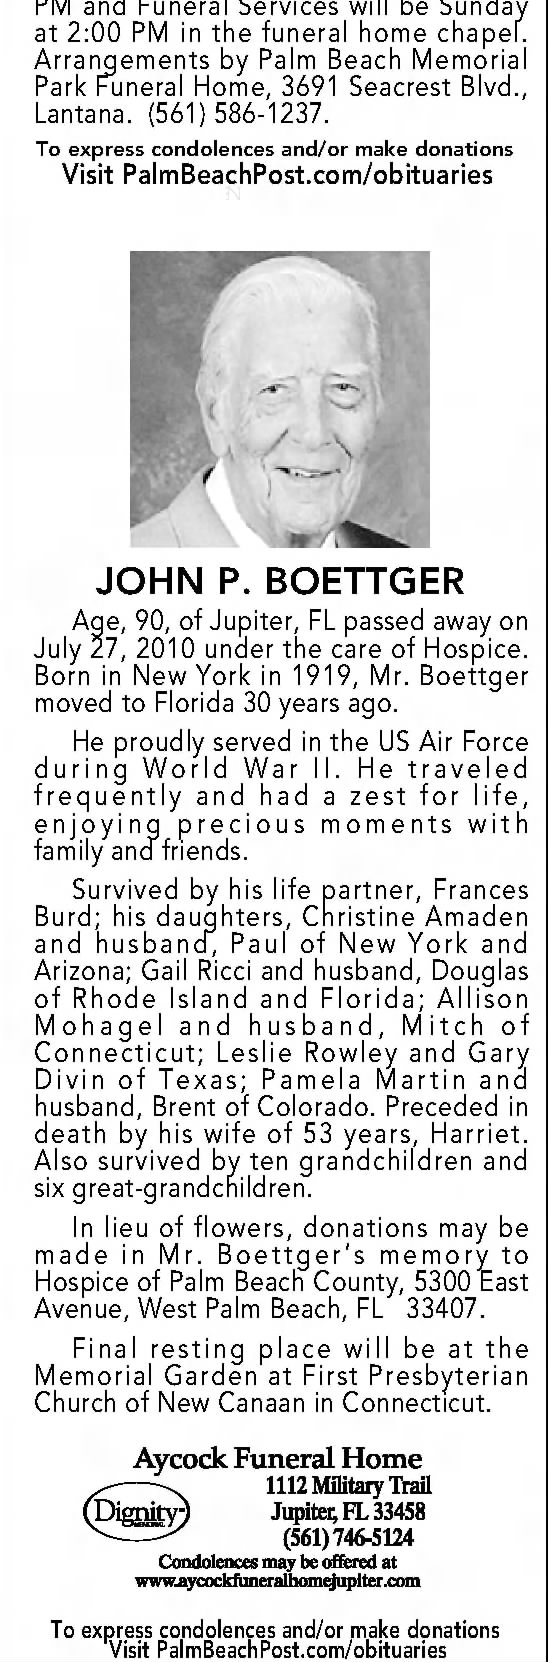 Obituary for JOHN P. BOETTGER, 1919-2010 (Aged 90)